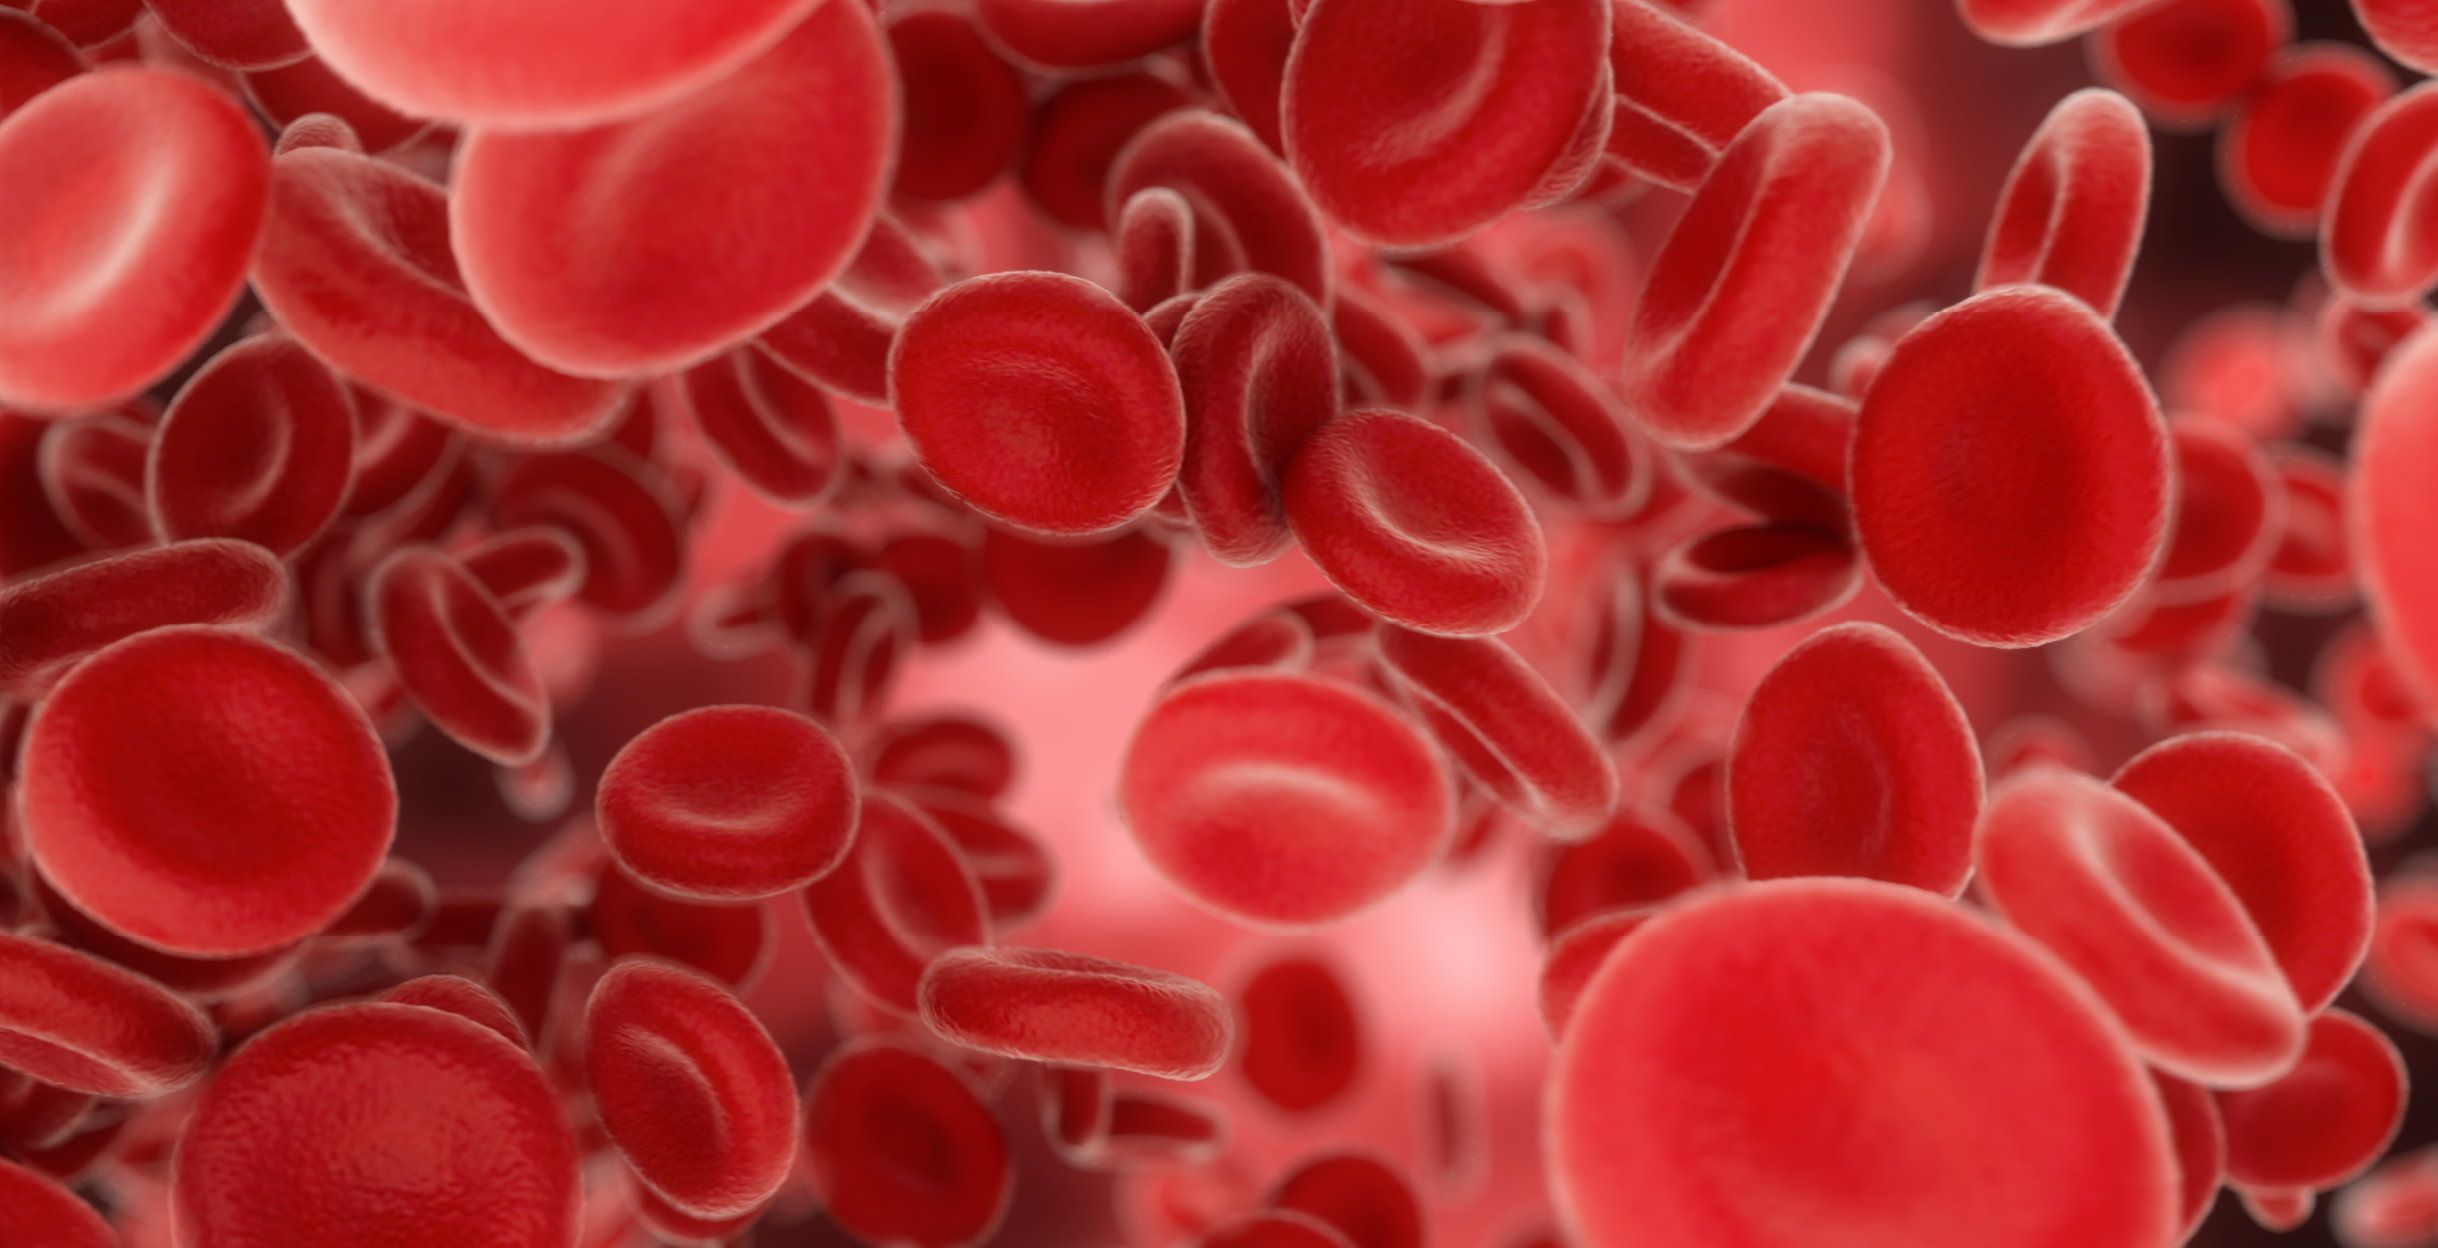 Фото - Стресс-реакция и система крови: какие характерные изменения показателей крови следует учитывать врачу